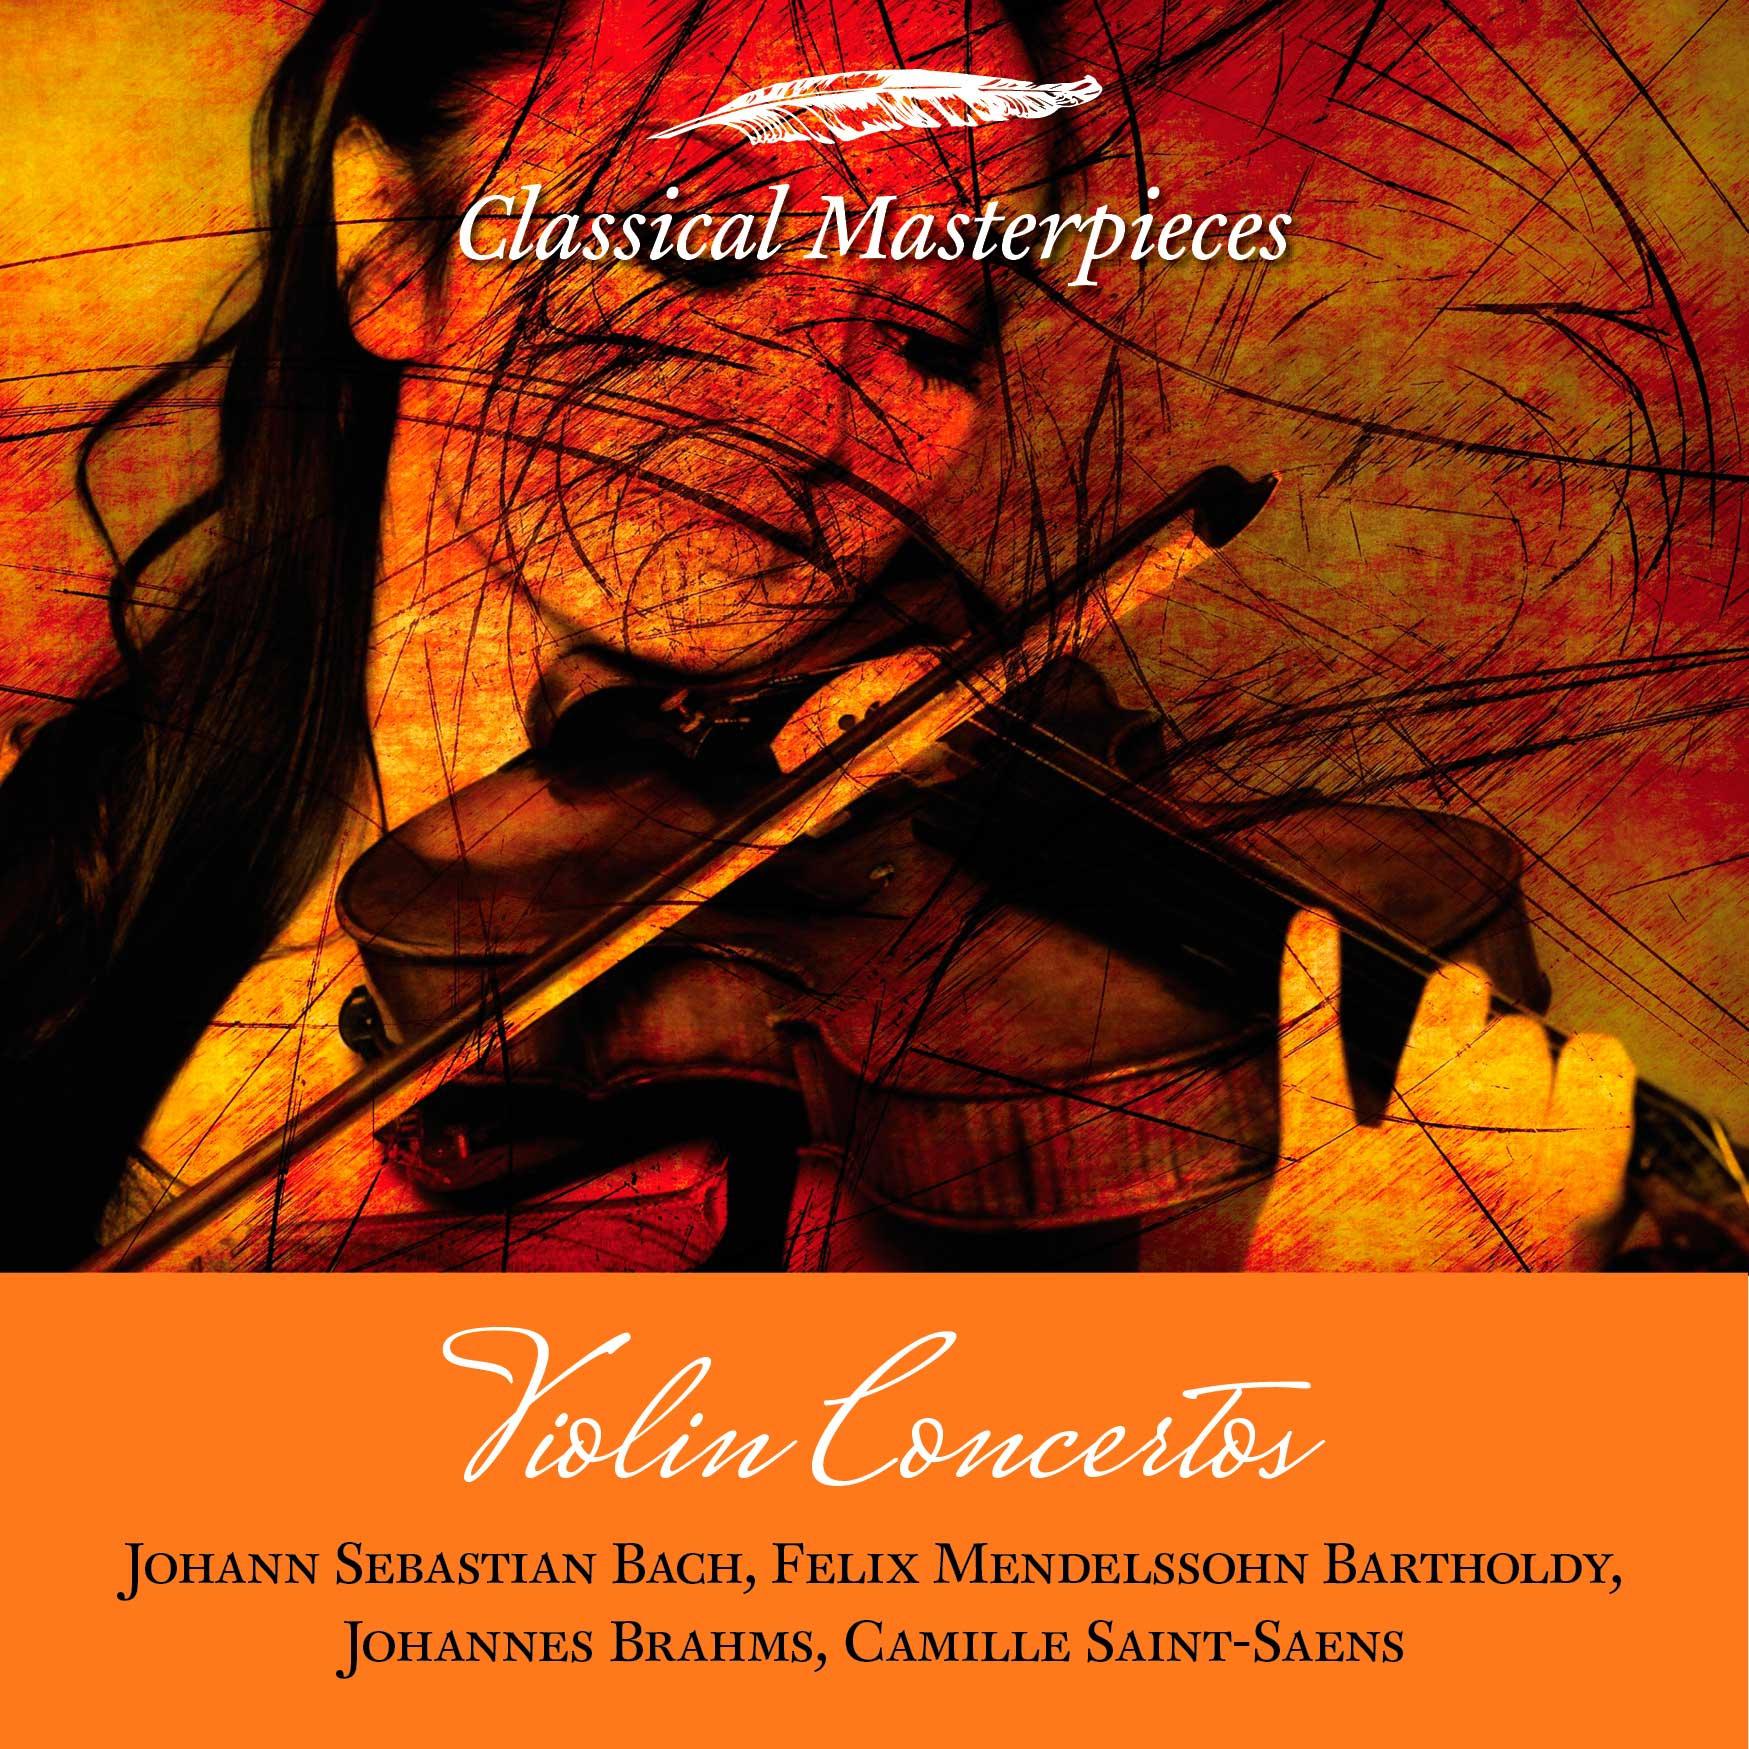 Violin Concerto in E minor, op. 64:Allegro molto appassionata